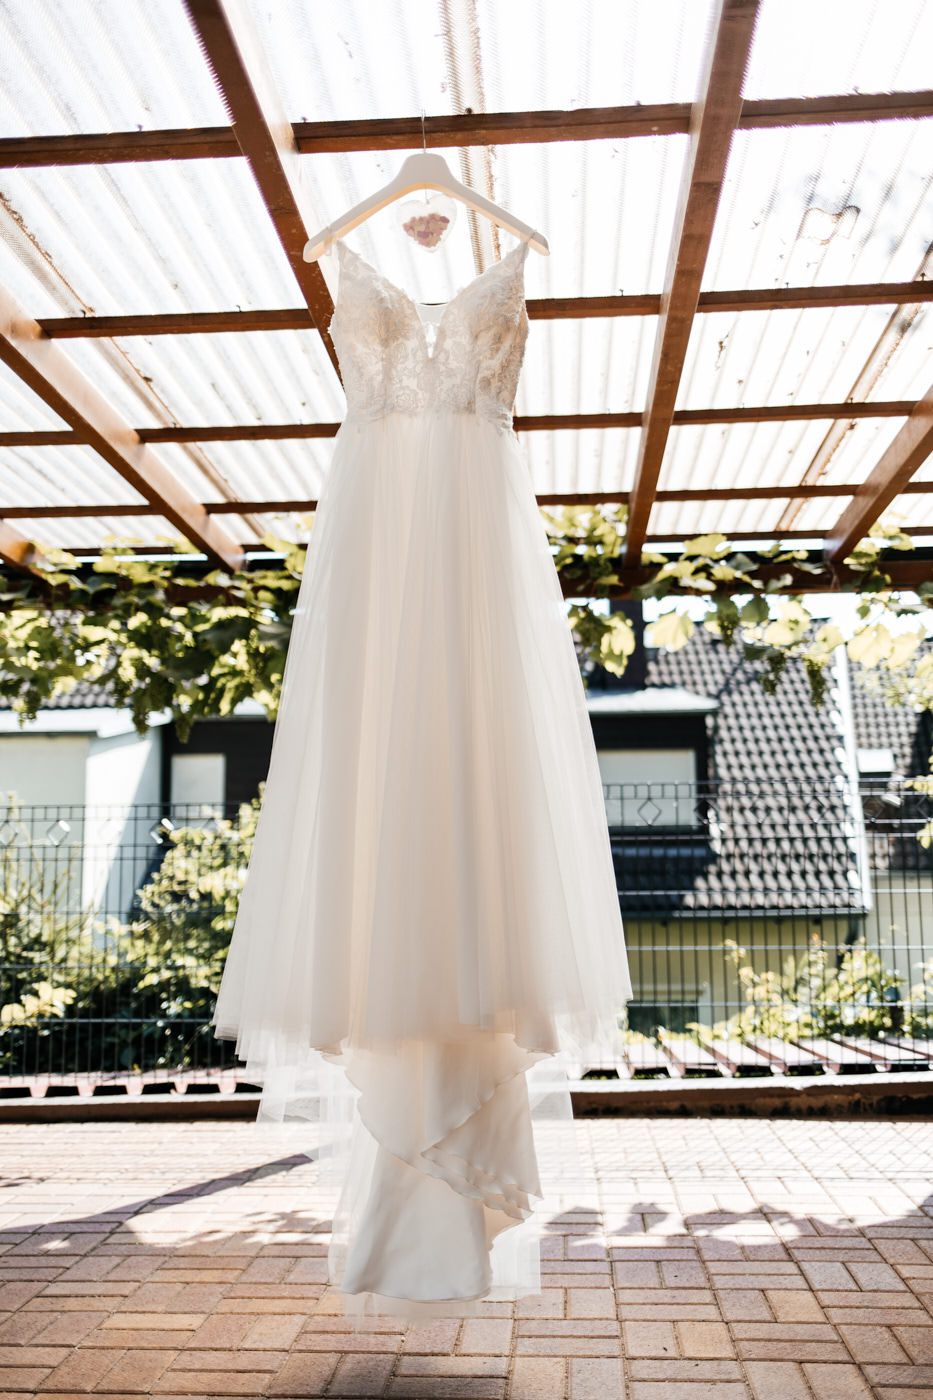 Hochzeit. Brautkleid hängt auf der Terrasse.